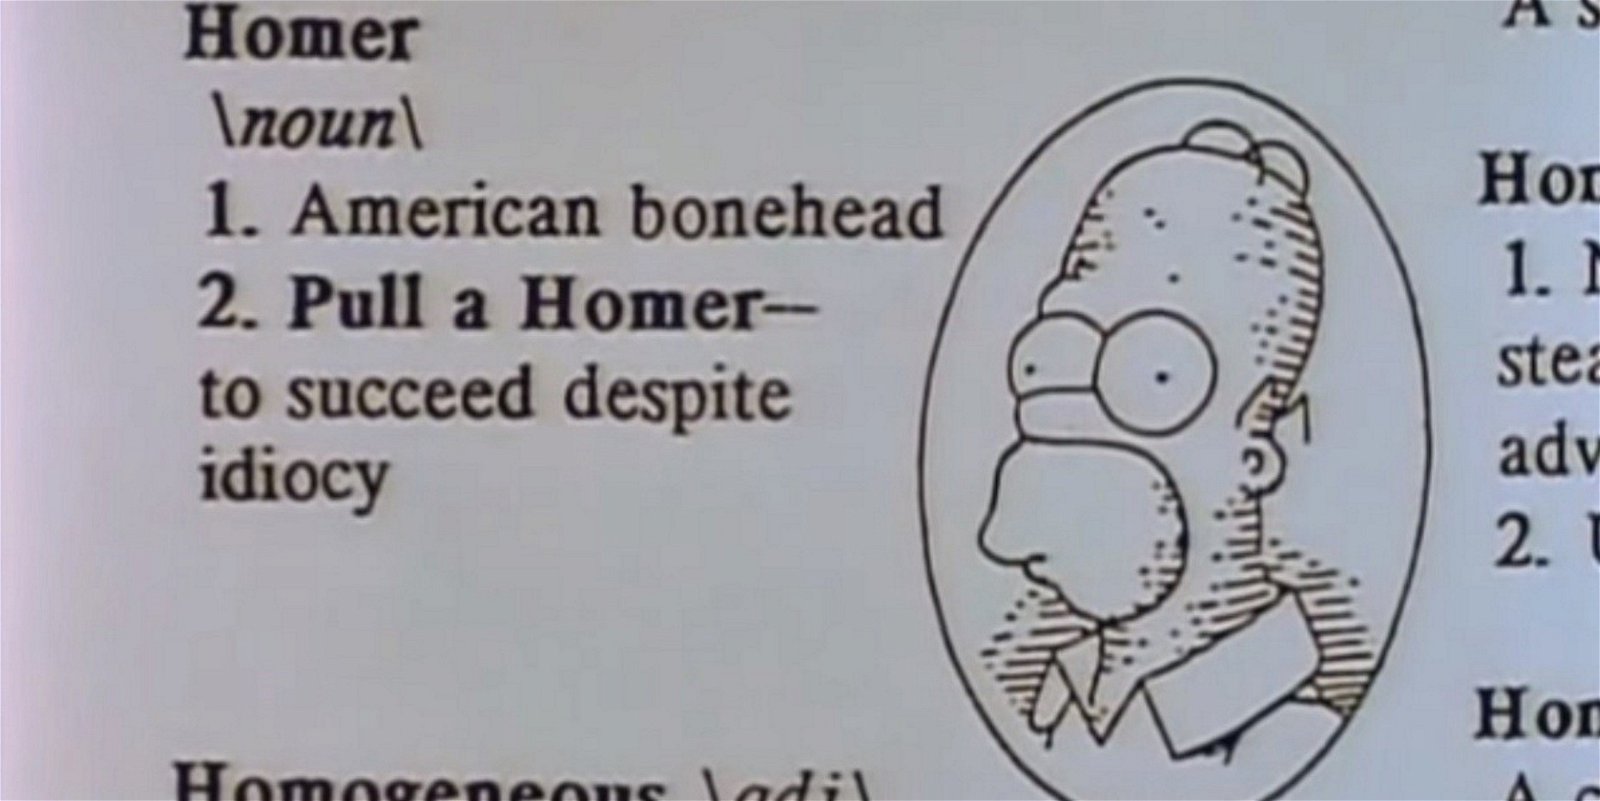 Las 12 mayores estupideces que ha cometido Homer Simpson